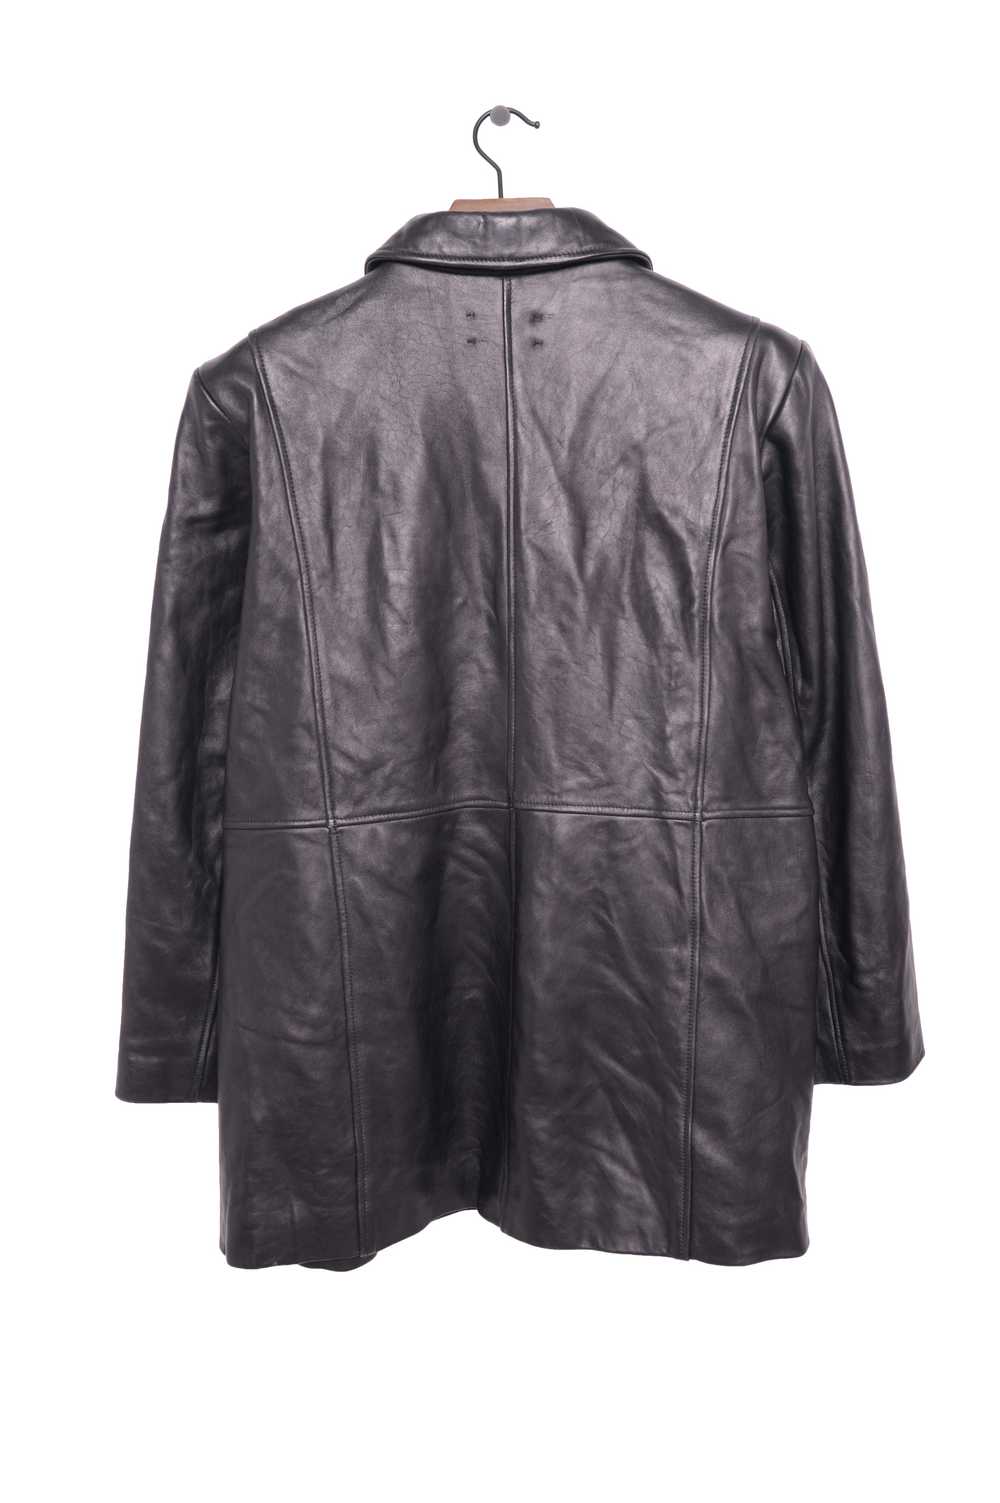 1990s Leather Jacket - image 2